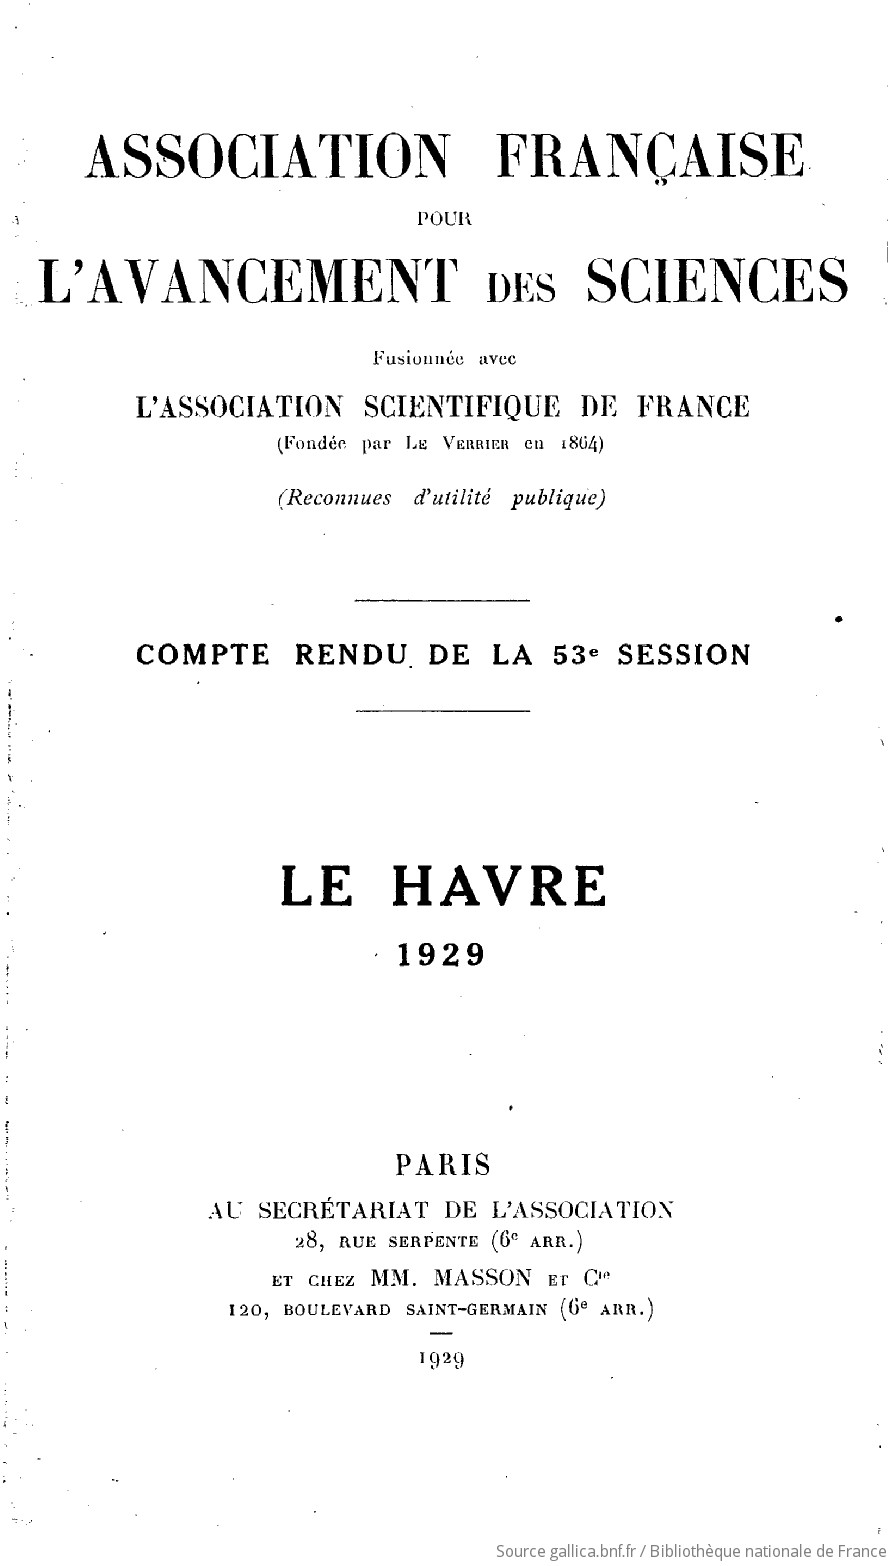 Compte-rendu de la 53e session, Le Havre 1929 / Association française pour l'avancement des sciences...